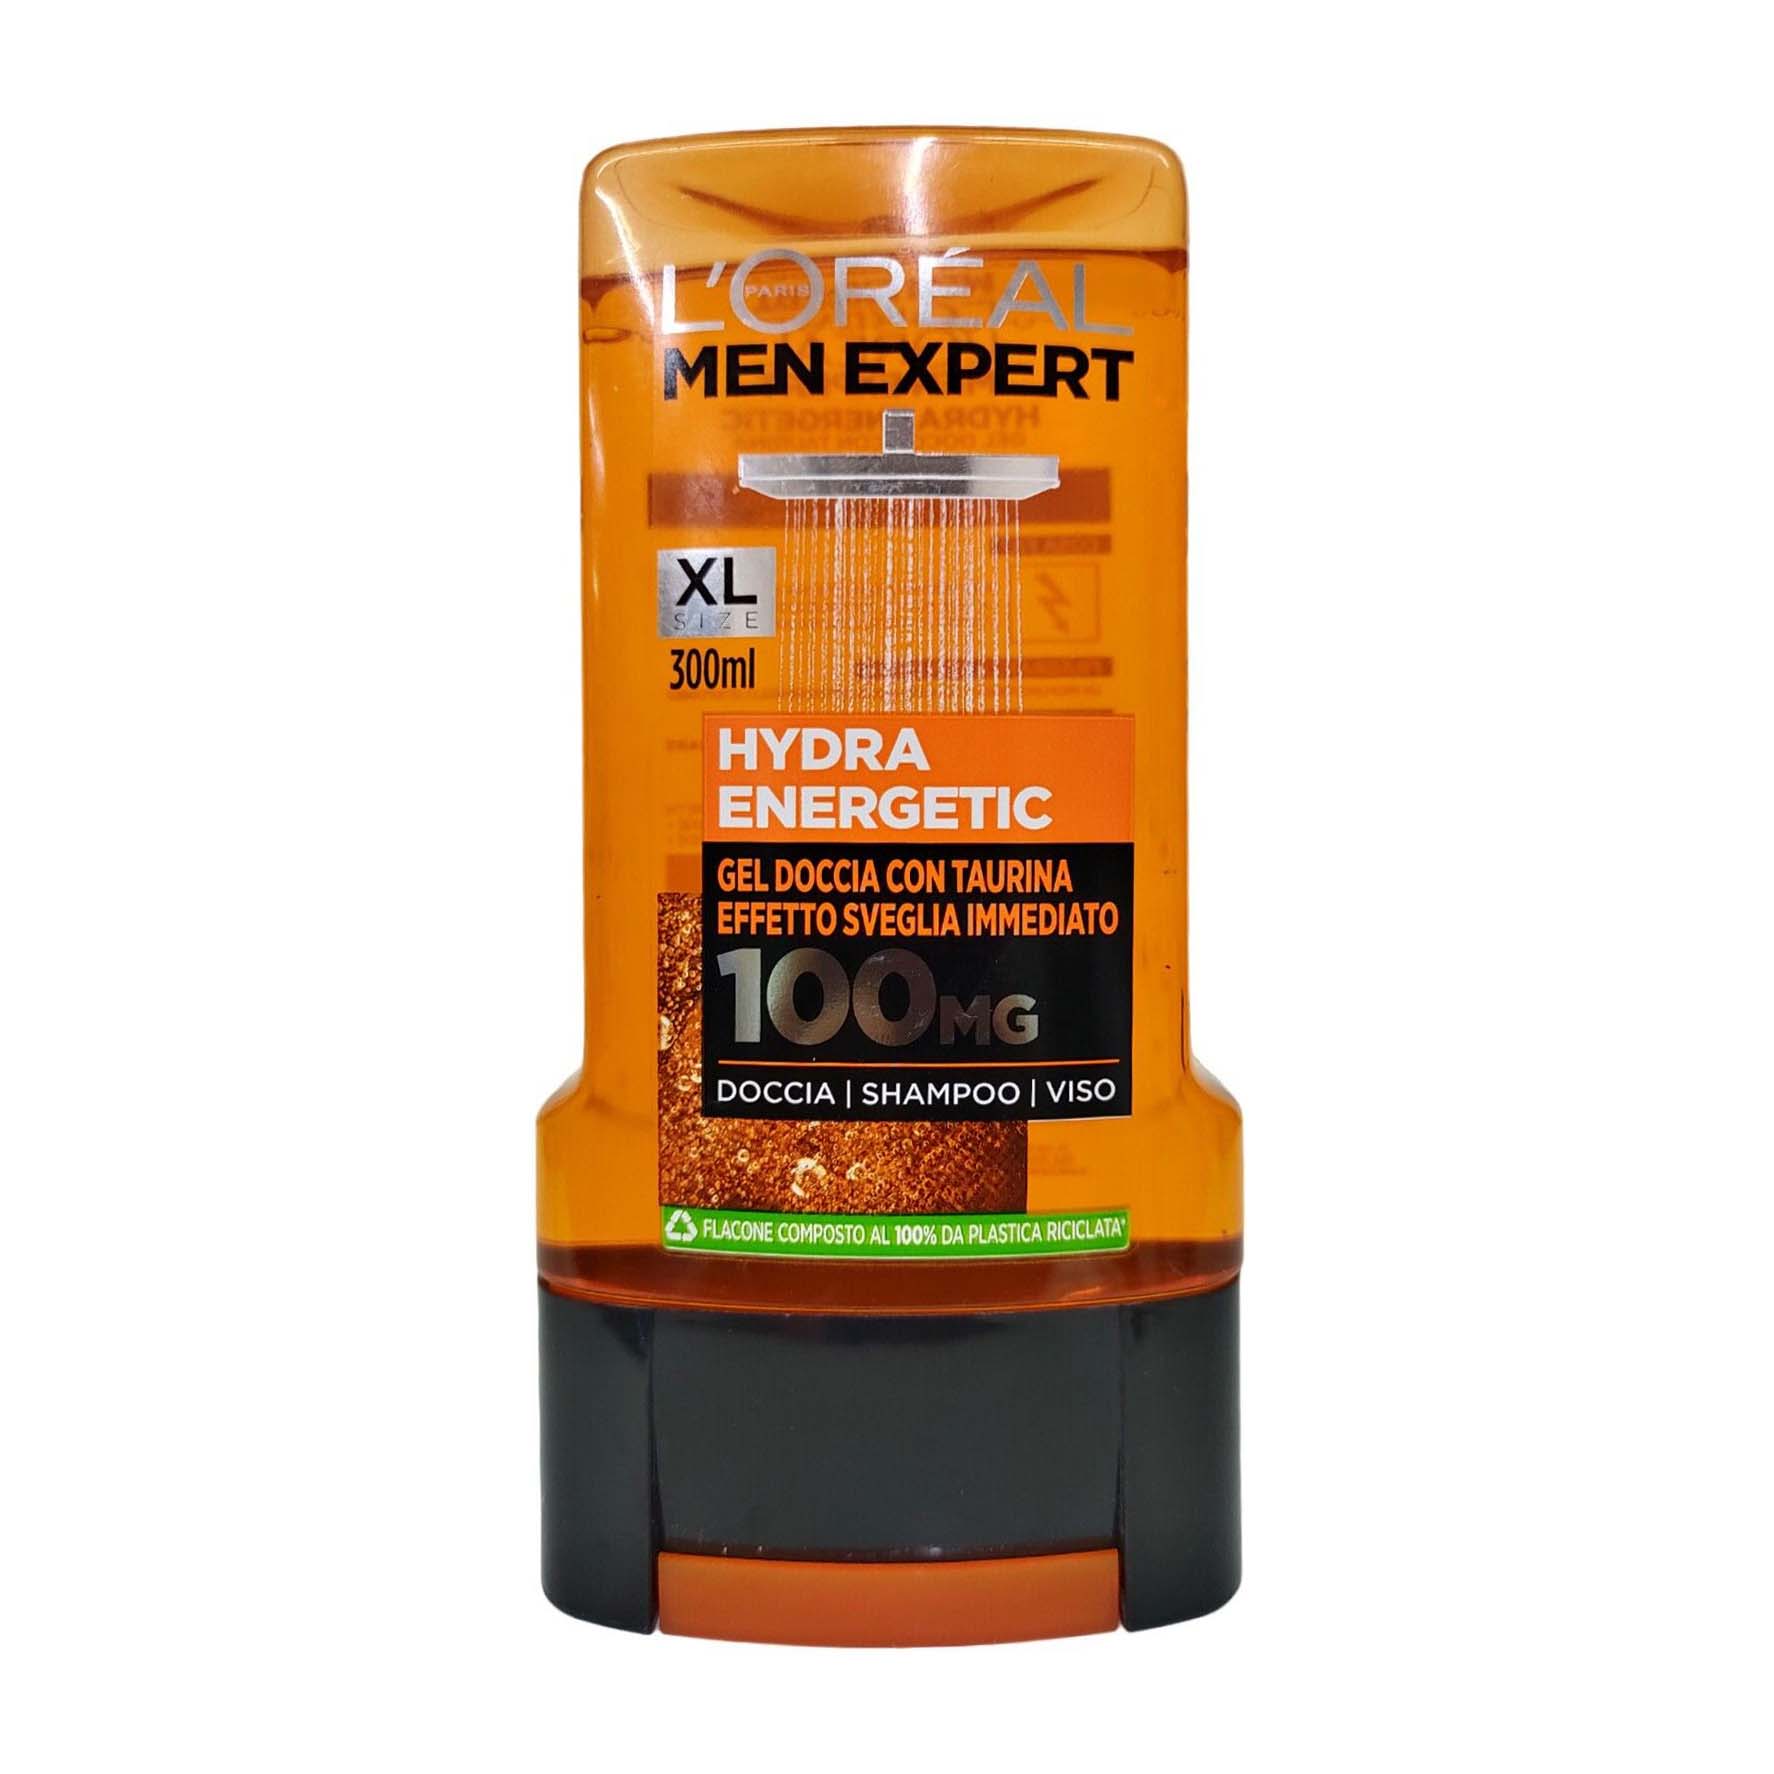 L'Oreal Men Expert XL Hydra Energetic Shower Gel - 300ml - Bloom Pharmacy